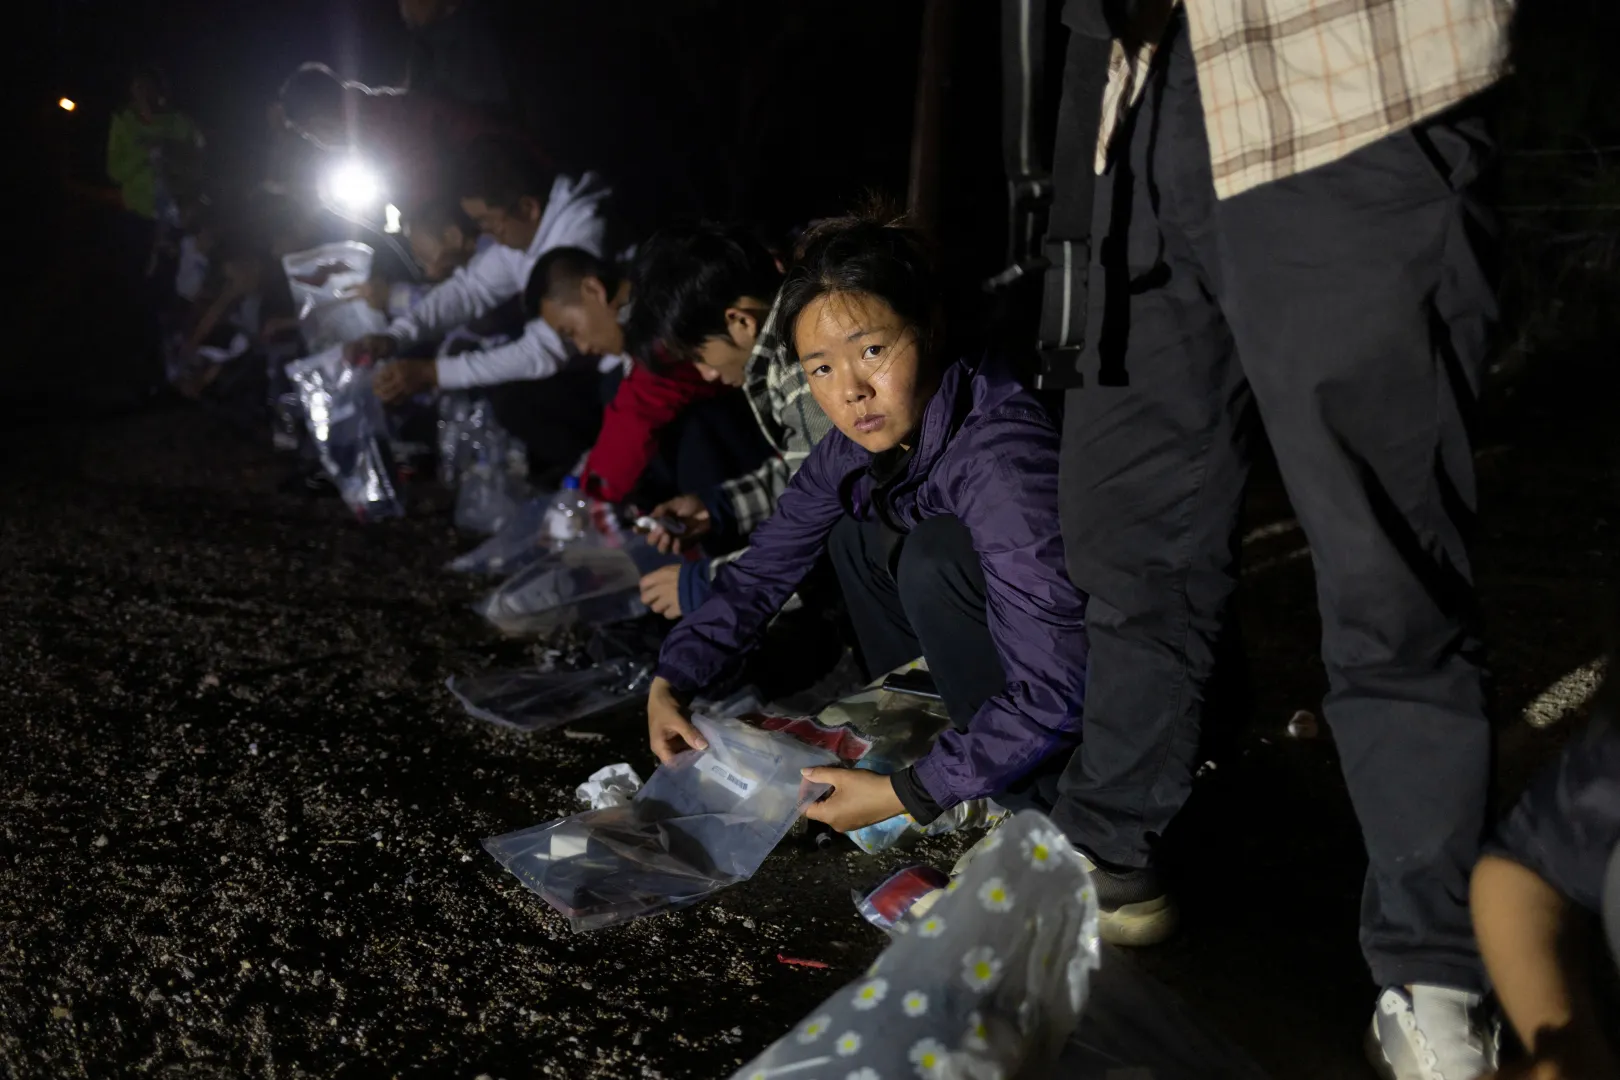 Nejlonzacskóba pakolja értékeit egy fiatal kínai nő, aki nemrég szökött át a mexikói határon Texasnál – Fotó: Reuters